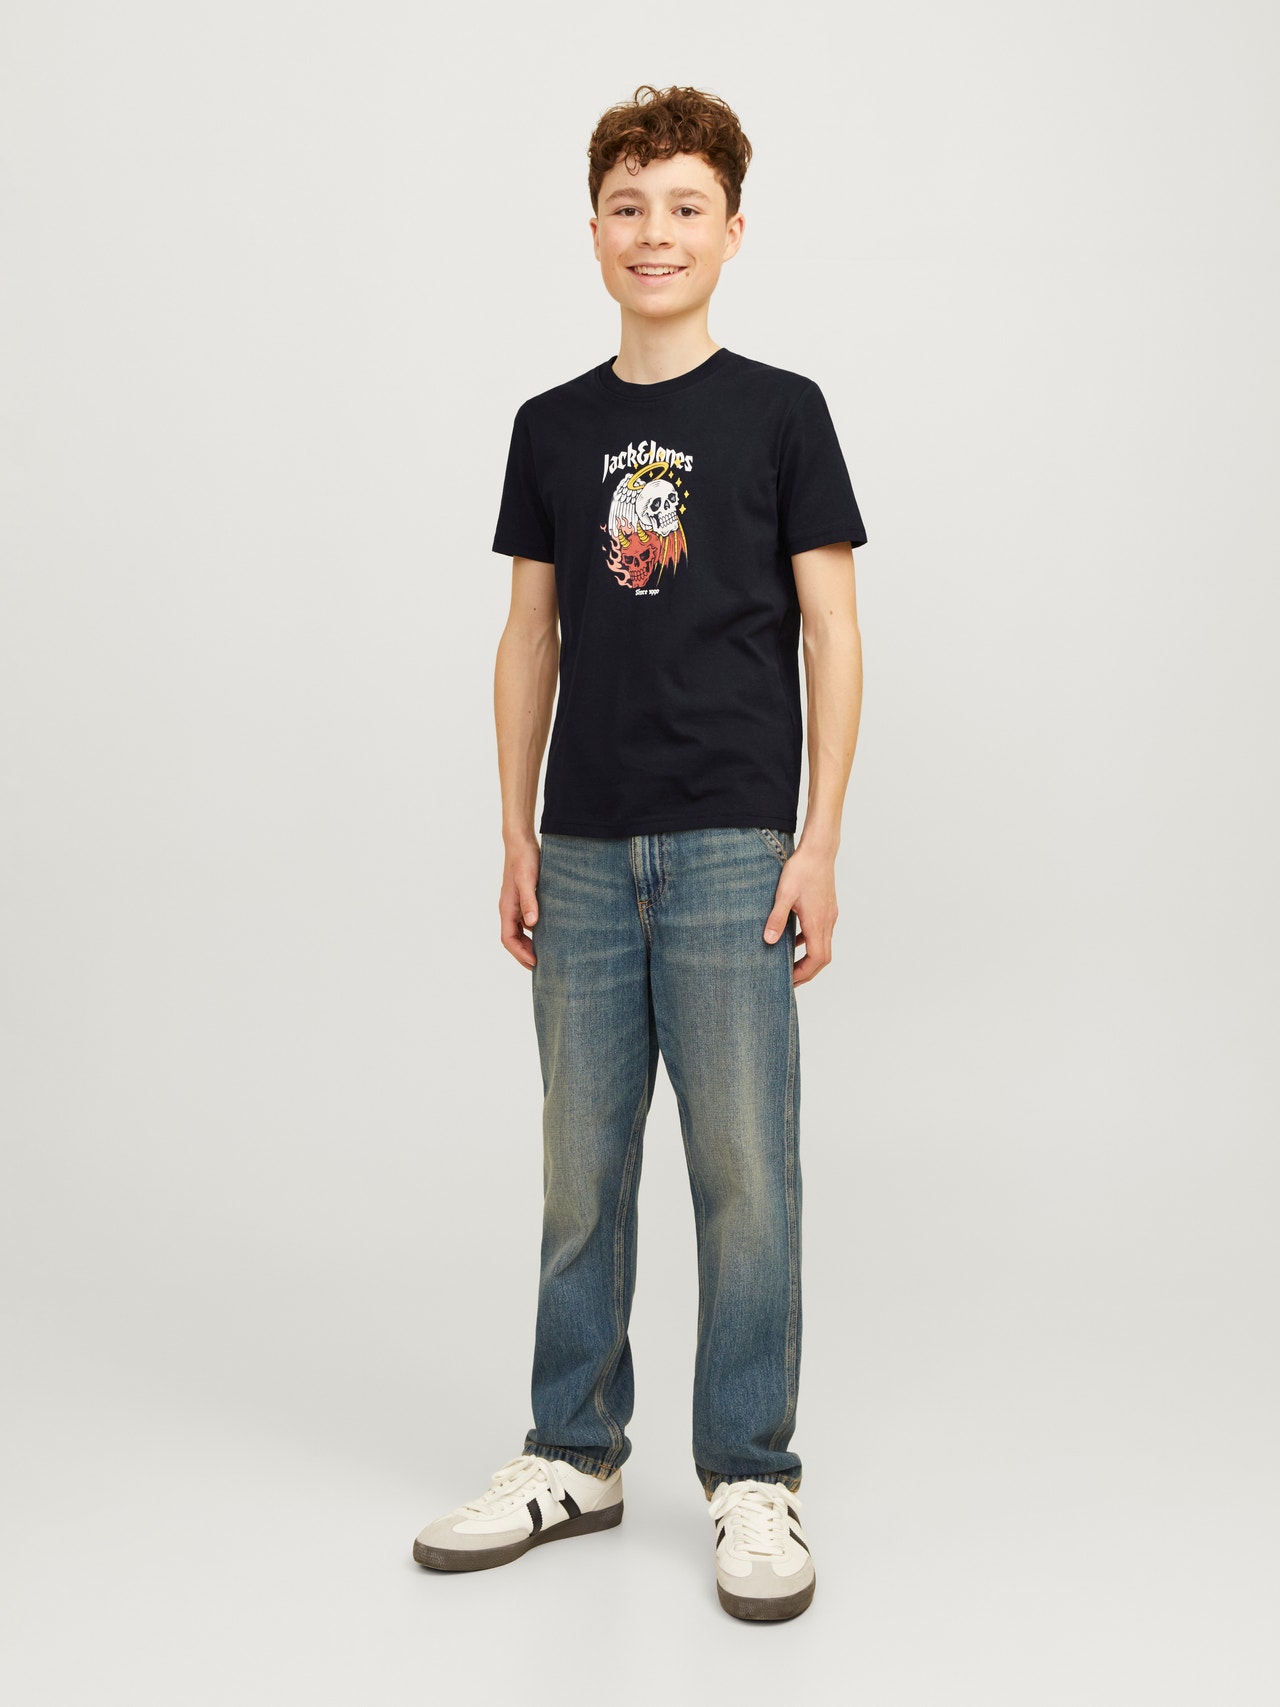 Jack & Jones T-shirt Imprimé Pour les garçons -Black - 12263213